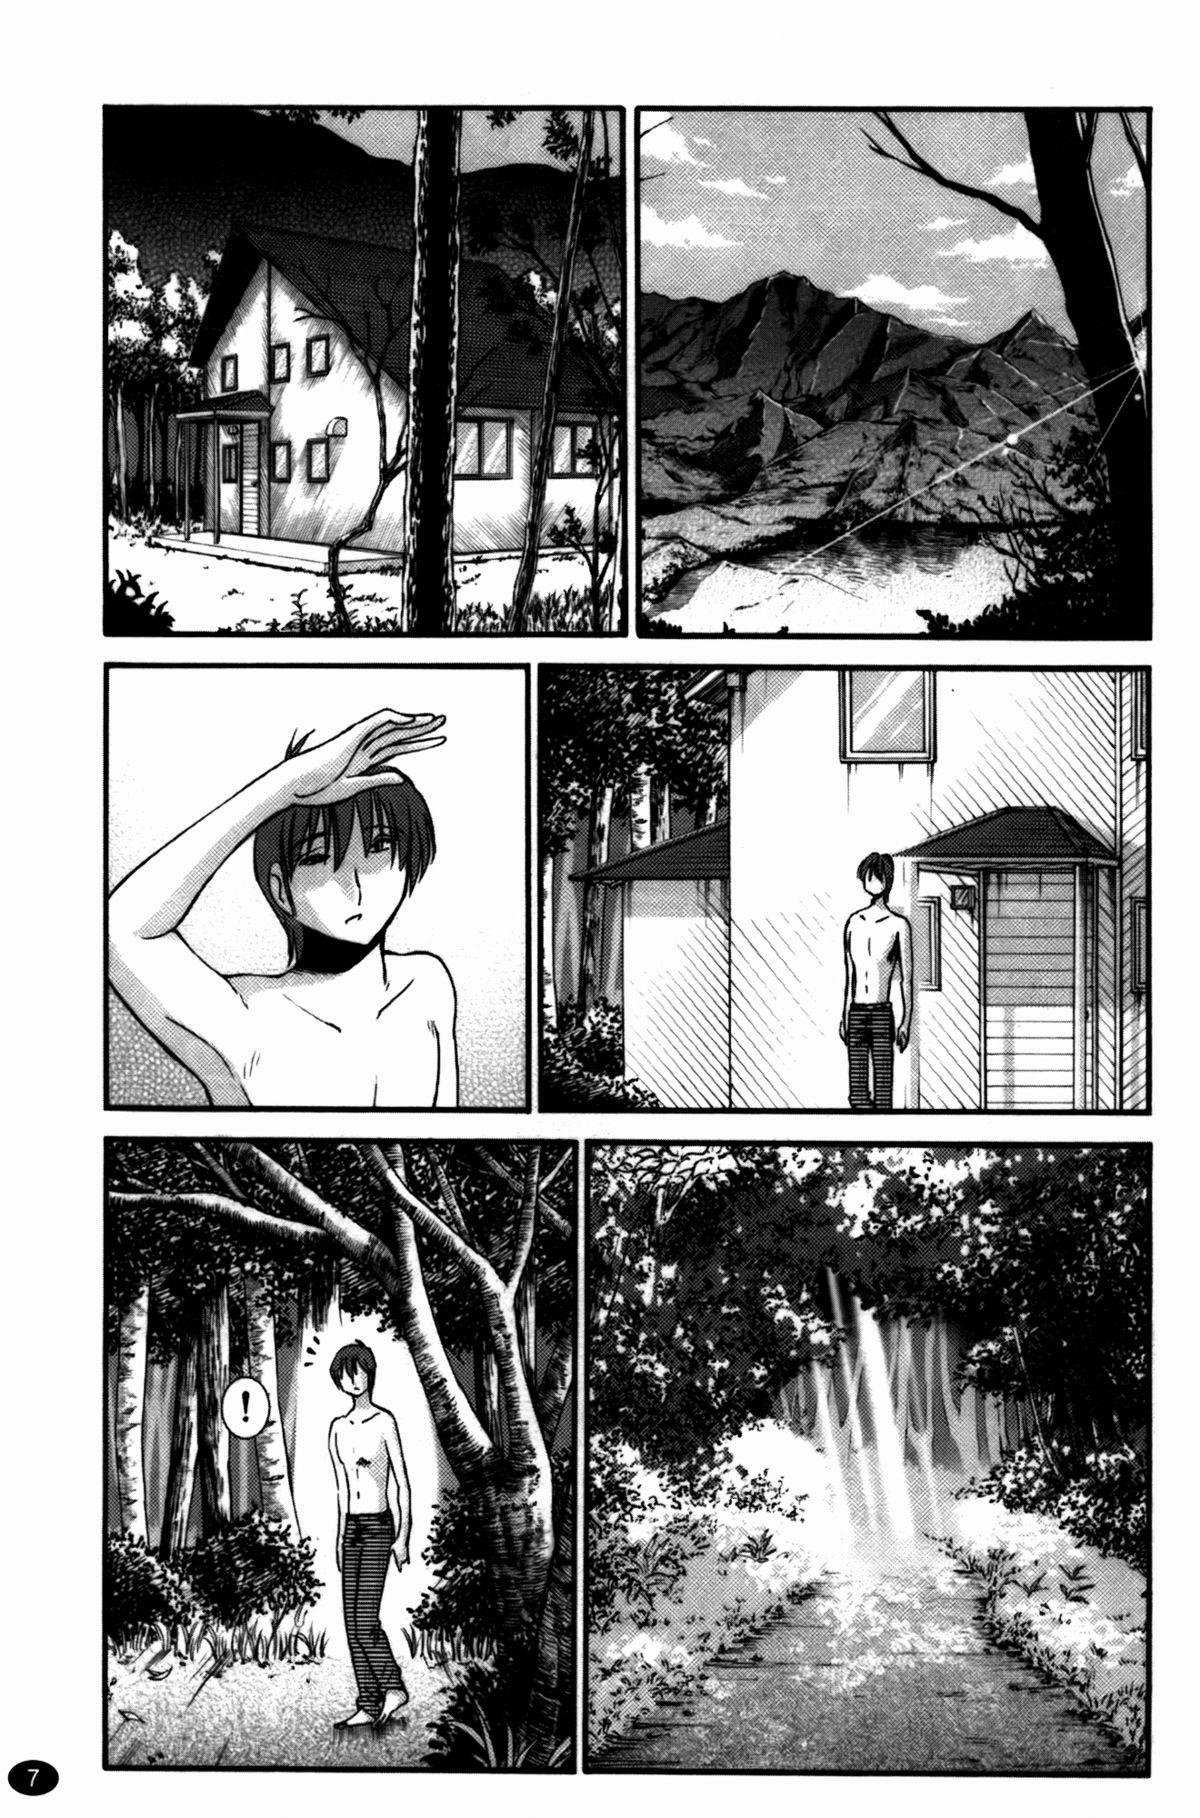 Pink Monokage no Irisu Volume 3 Chapter 17 Cdzinha - Page 8